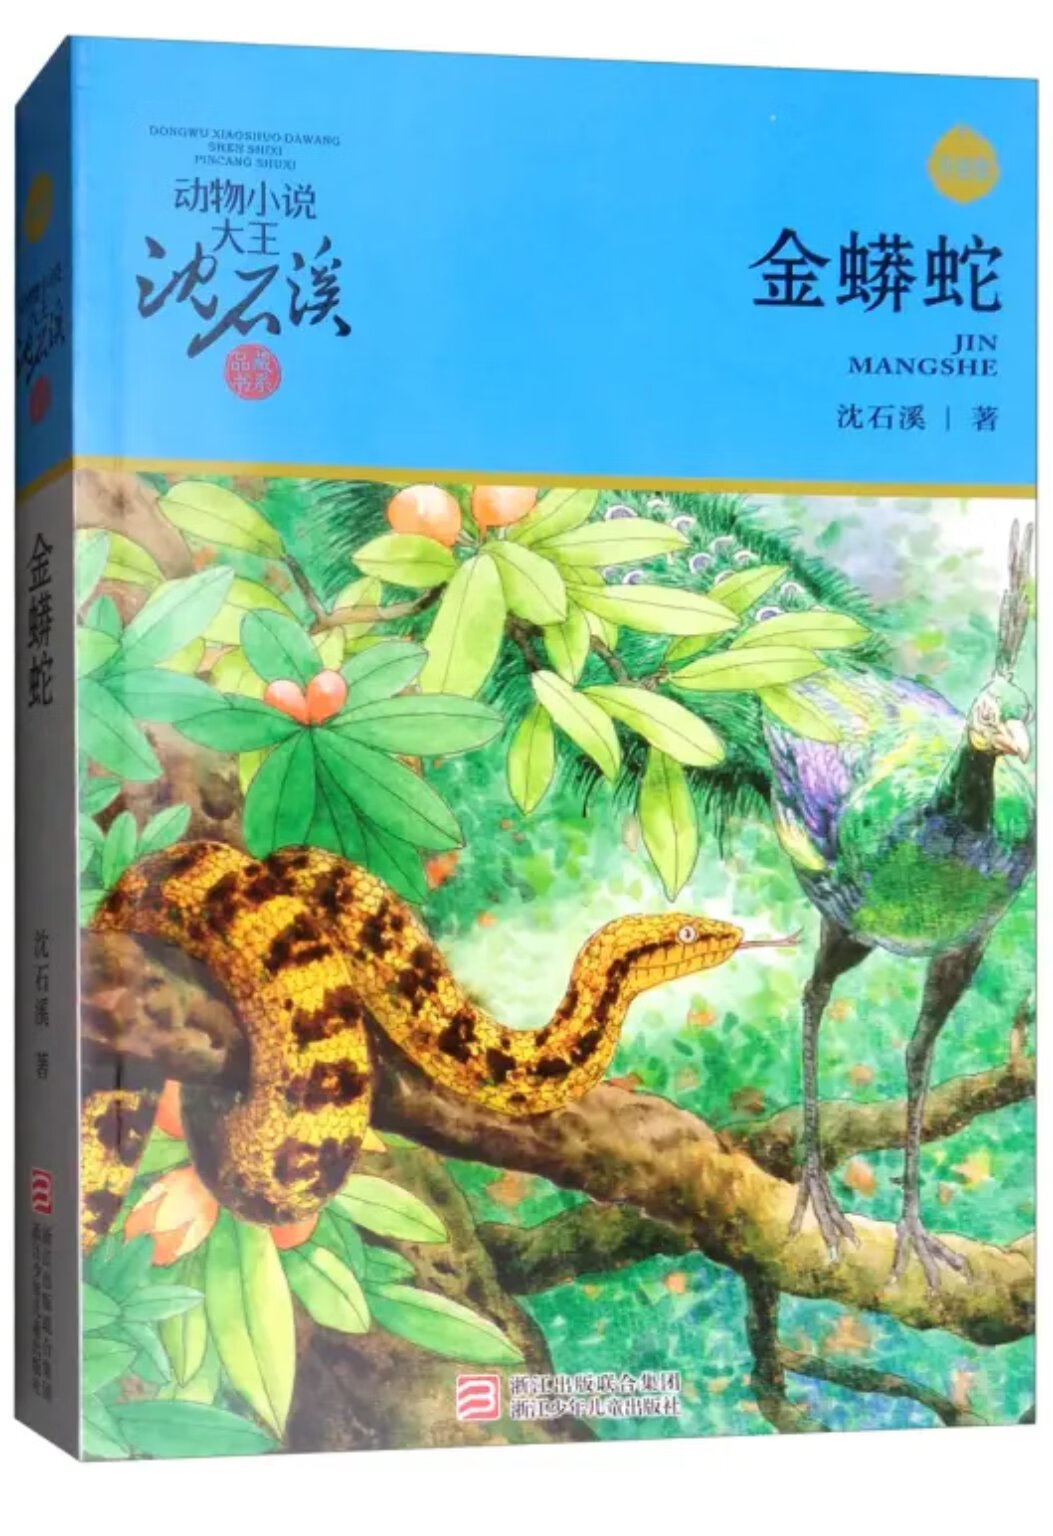 　　作品曾获中国图书奖、全国优秀儿童文学奖、冰心儿童文学奖、台湾杨唤儿童文学奖等多种奖项，被誉为“中国动物小说大王”。